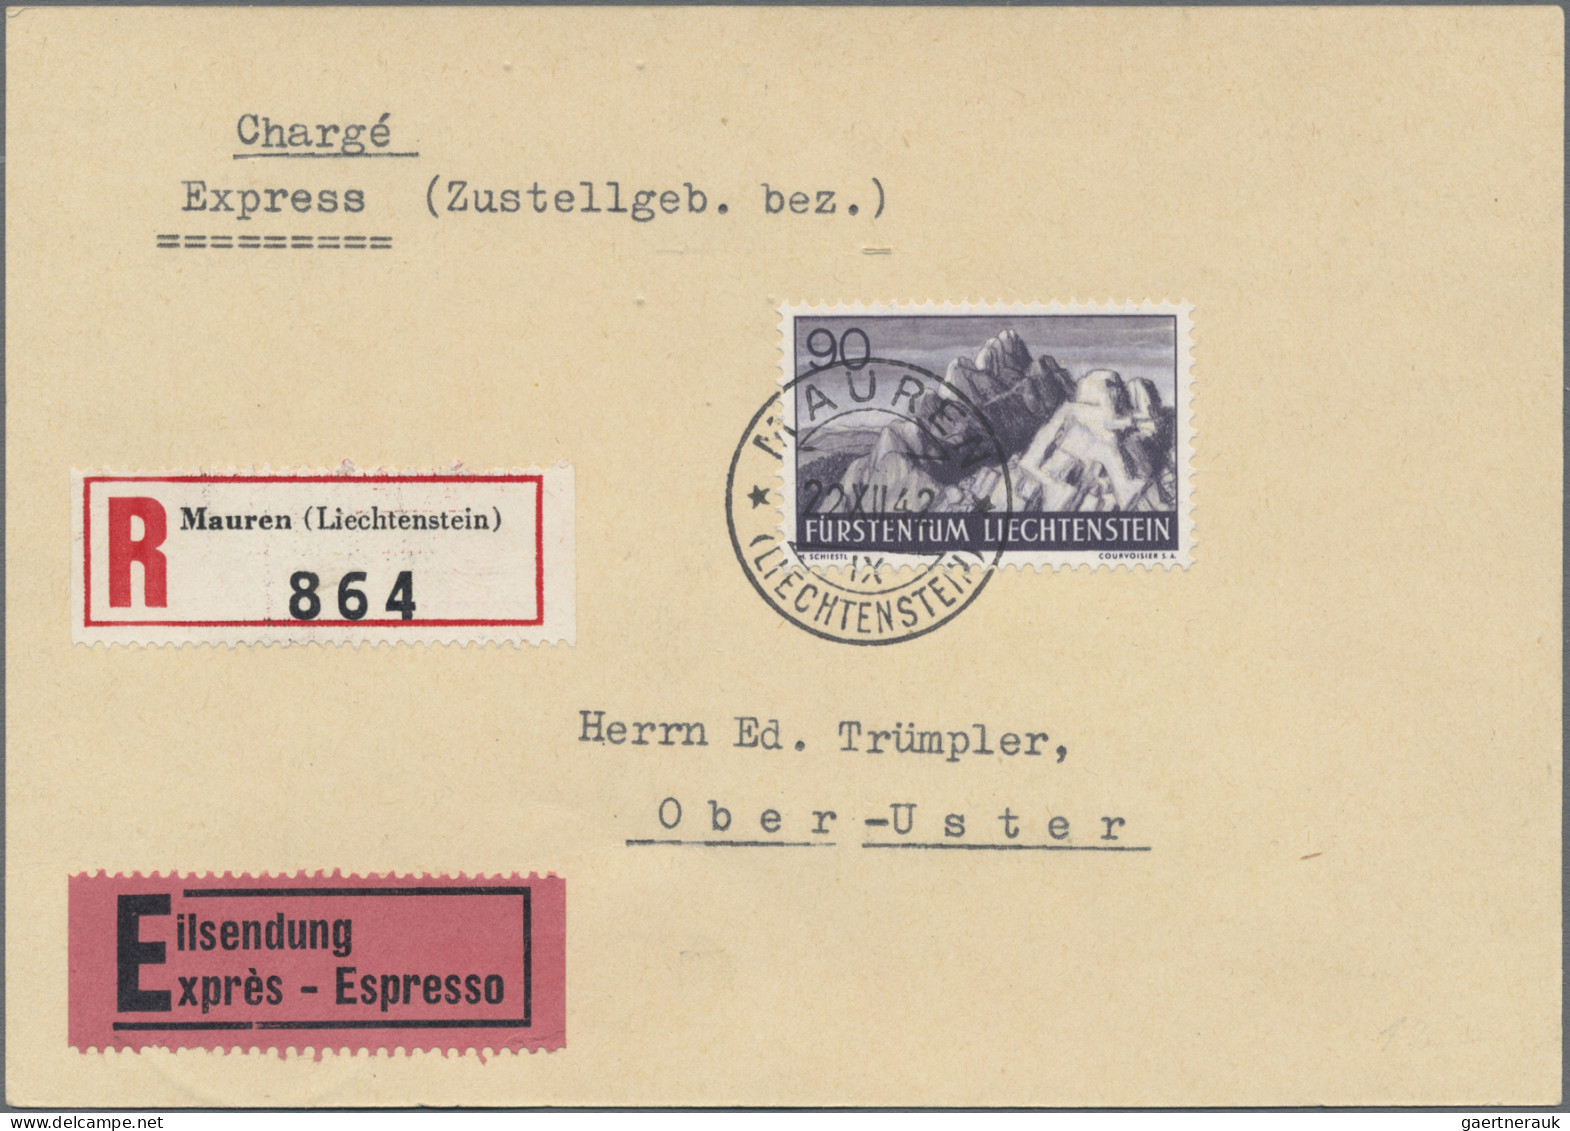 Liechtenstein: 1930/1946, Posten mit 60 Briefen und Karten mit interessanten Fra